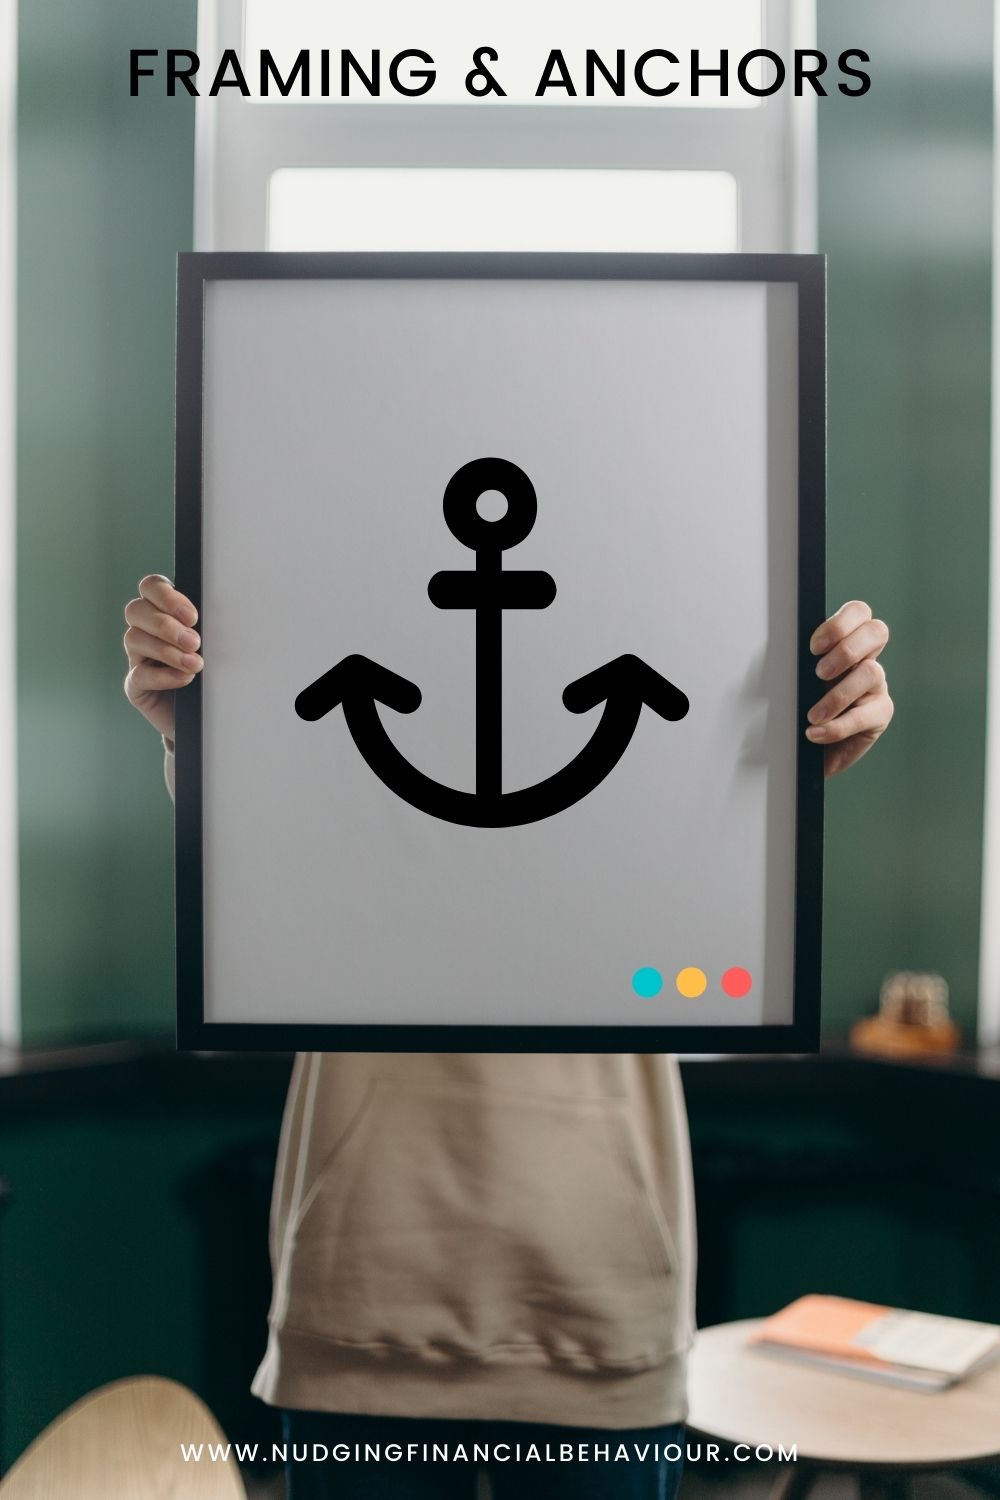 Framing and anchors